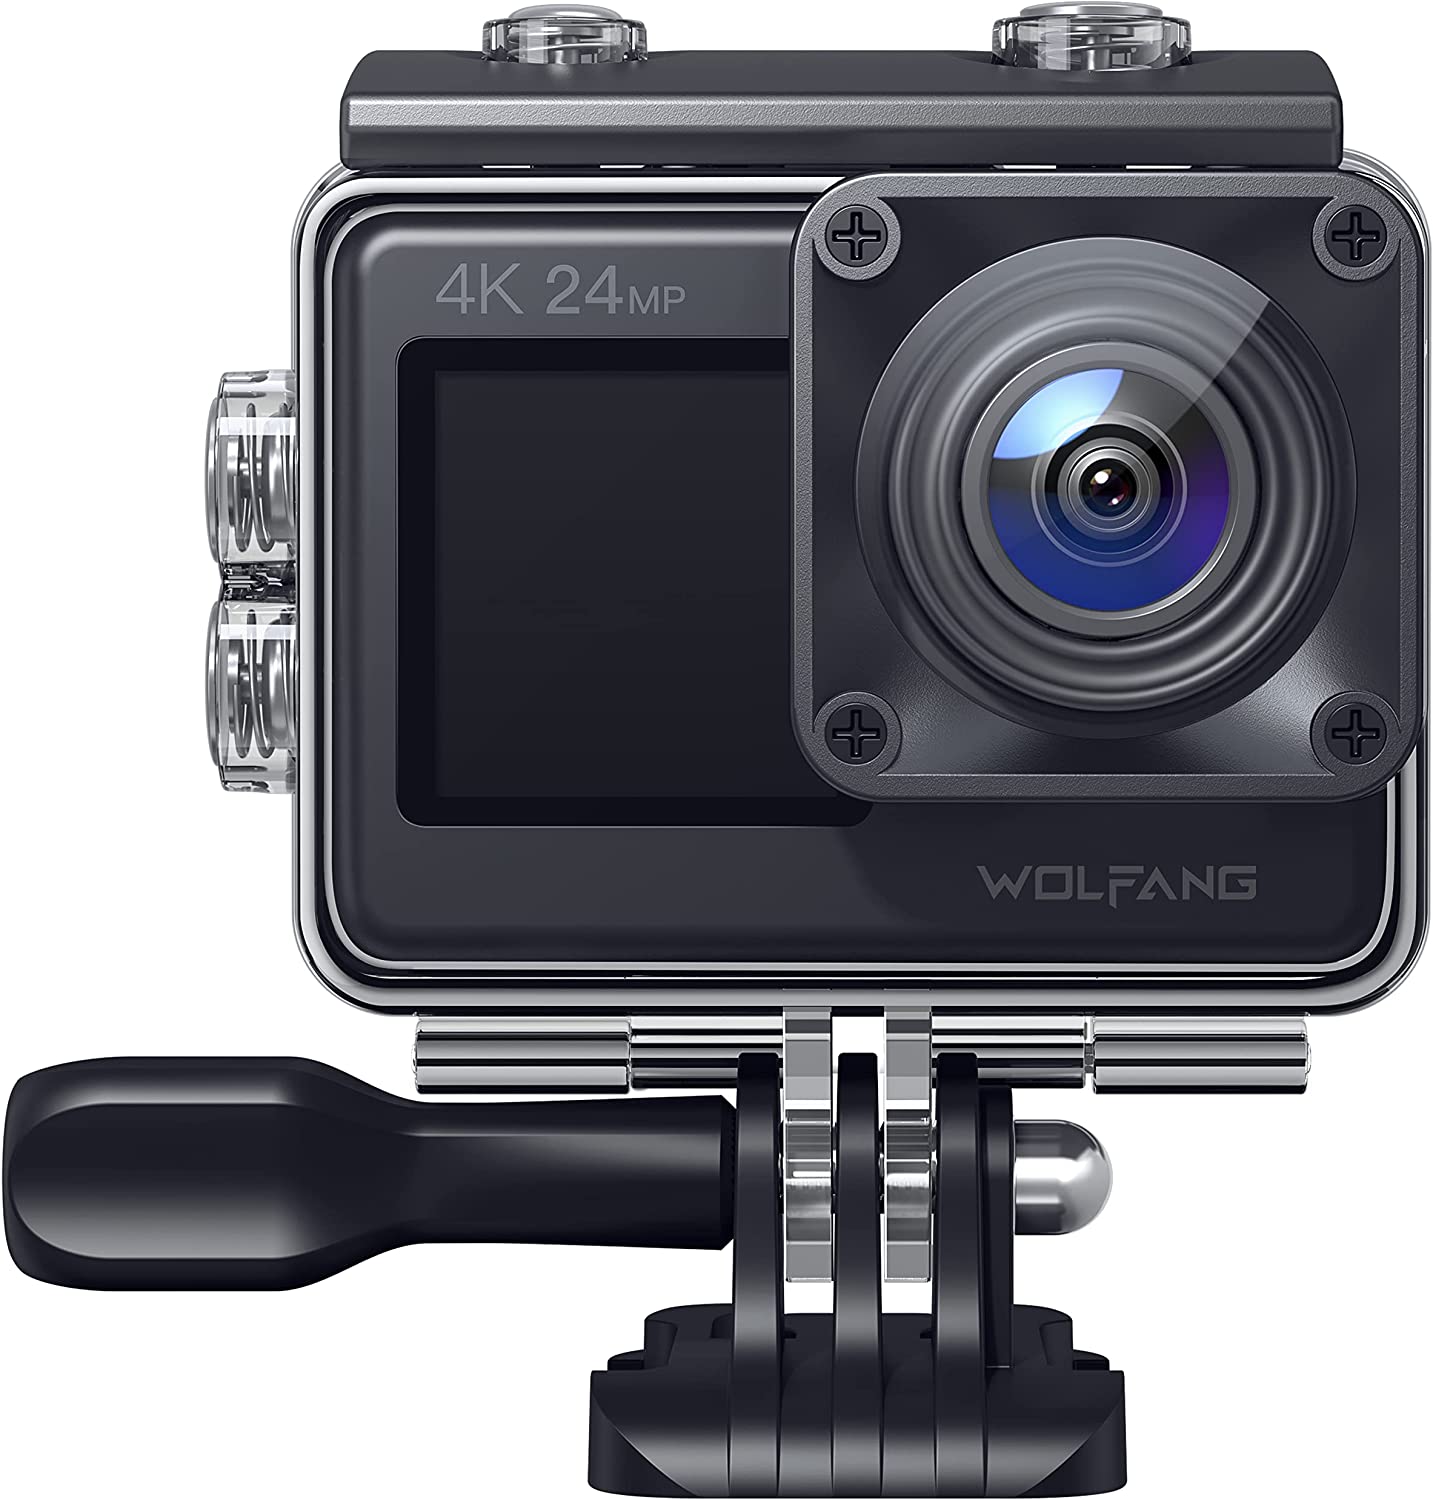 Bild zu 24MP Wolfang 4K Dual-Screen Action Cam mit Touchscreen und 170° Weitwinkel für 54,99€